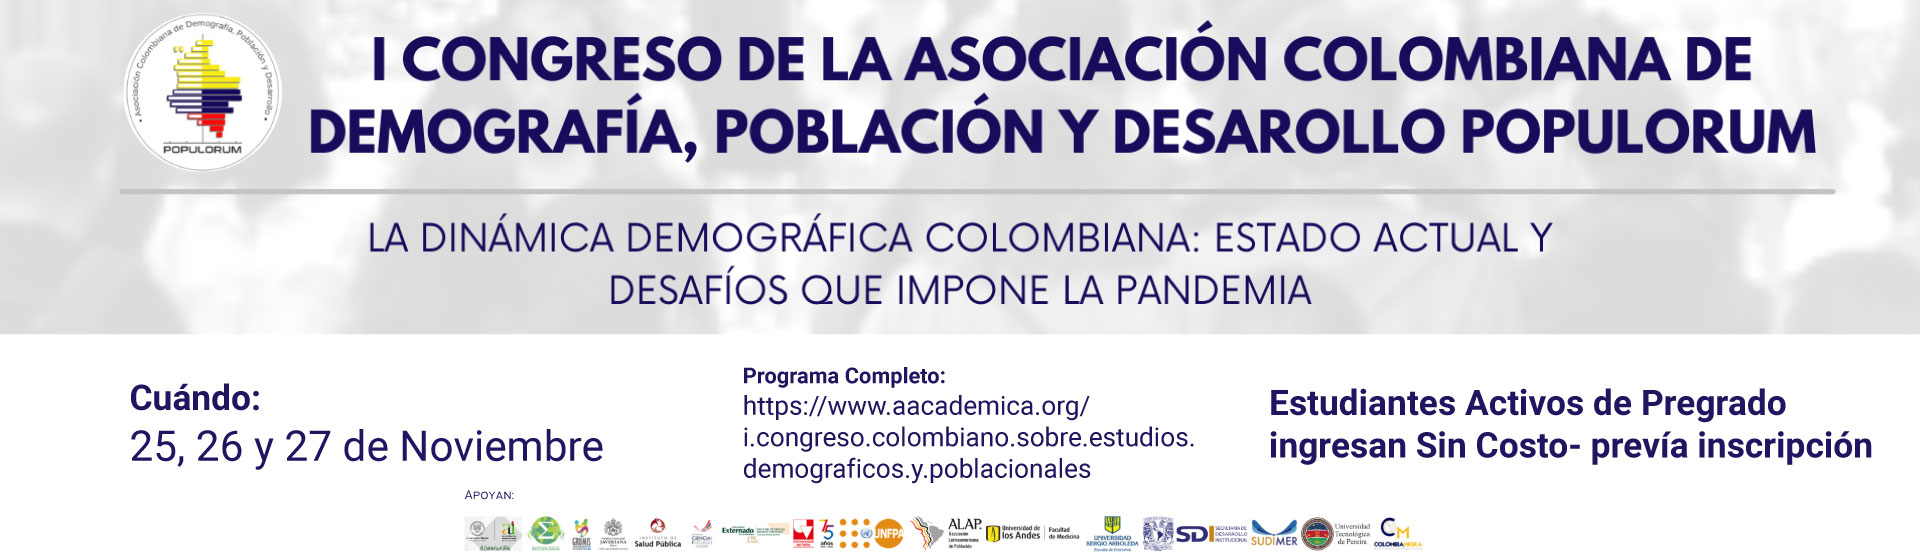 I Congreso de la Asociación Colombiana de Demografía Población y Desarrollo POPULORUM